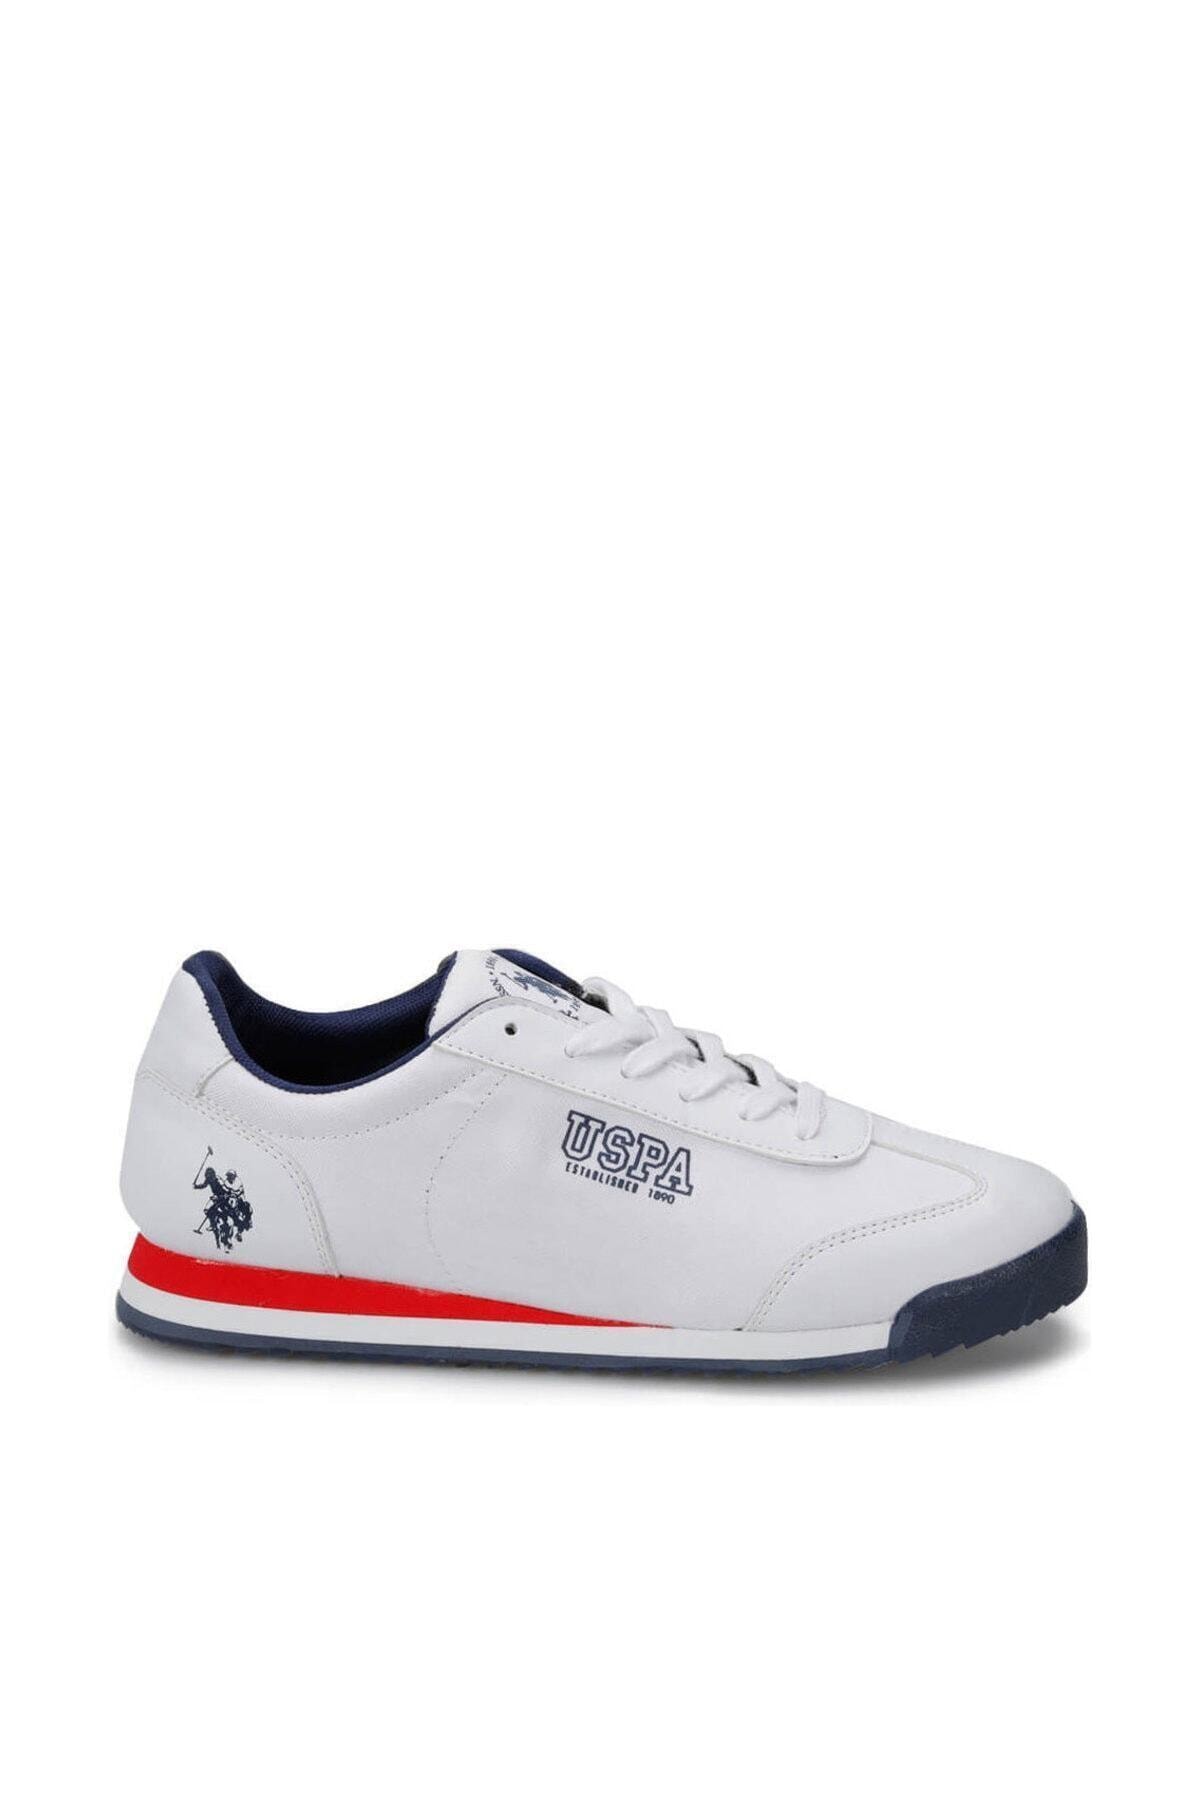 U.S. Polo Assn. DEEP SUMMER Beyaz Erkek Sneaker Ayakkabı 100378588